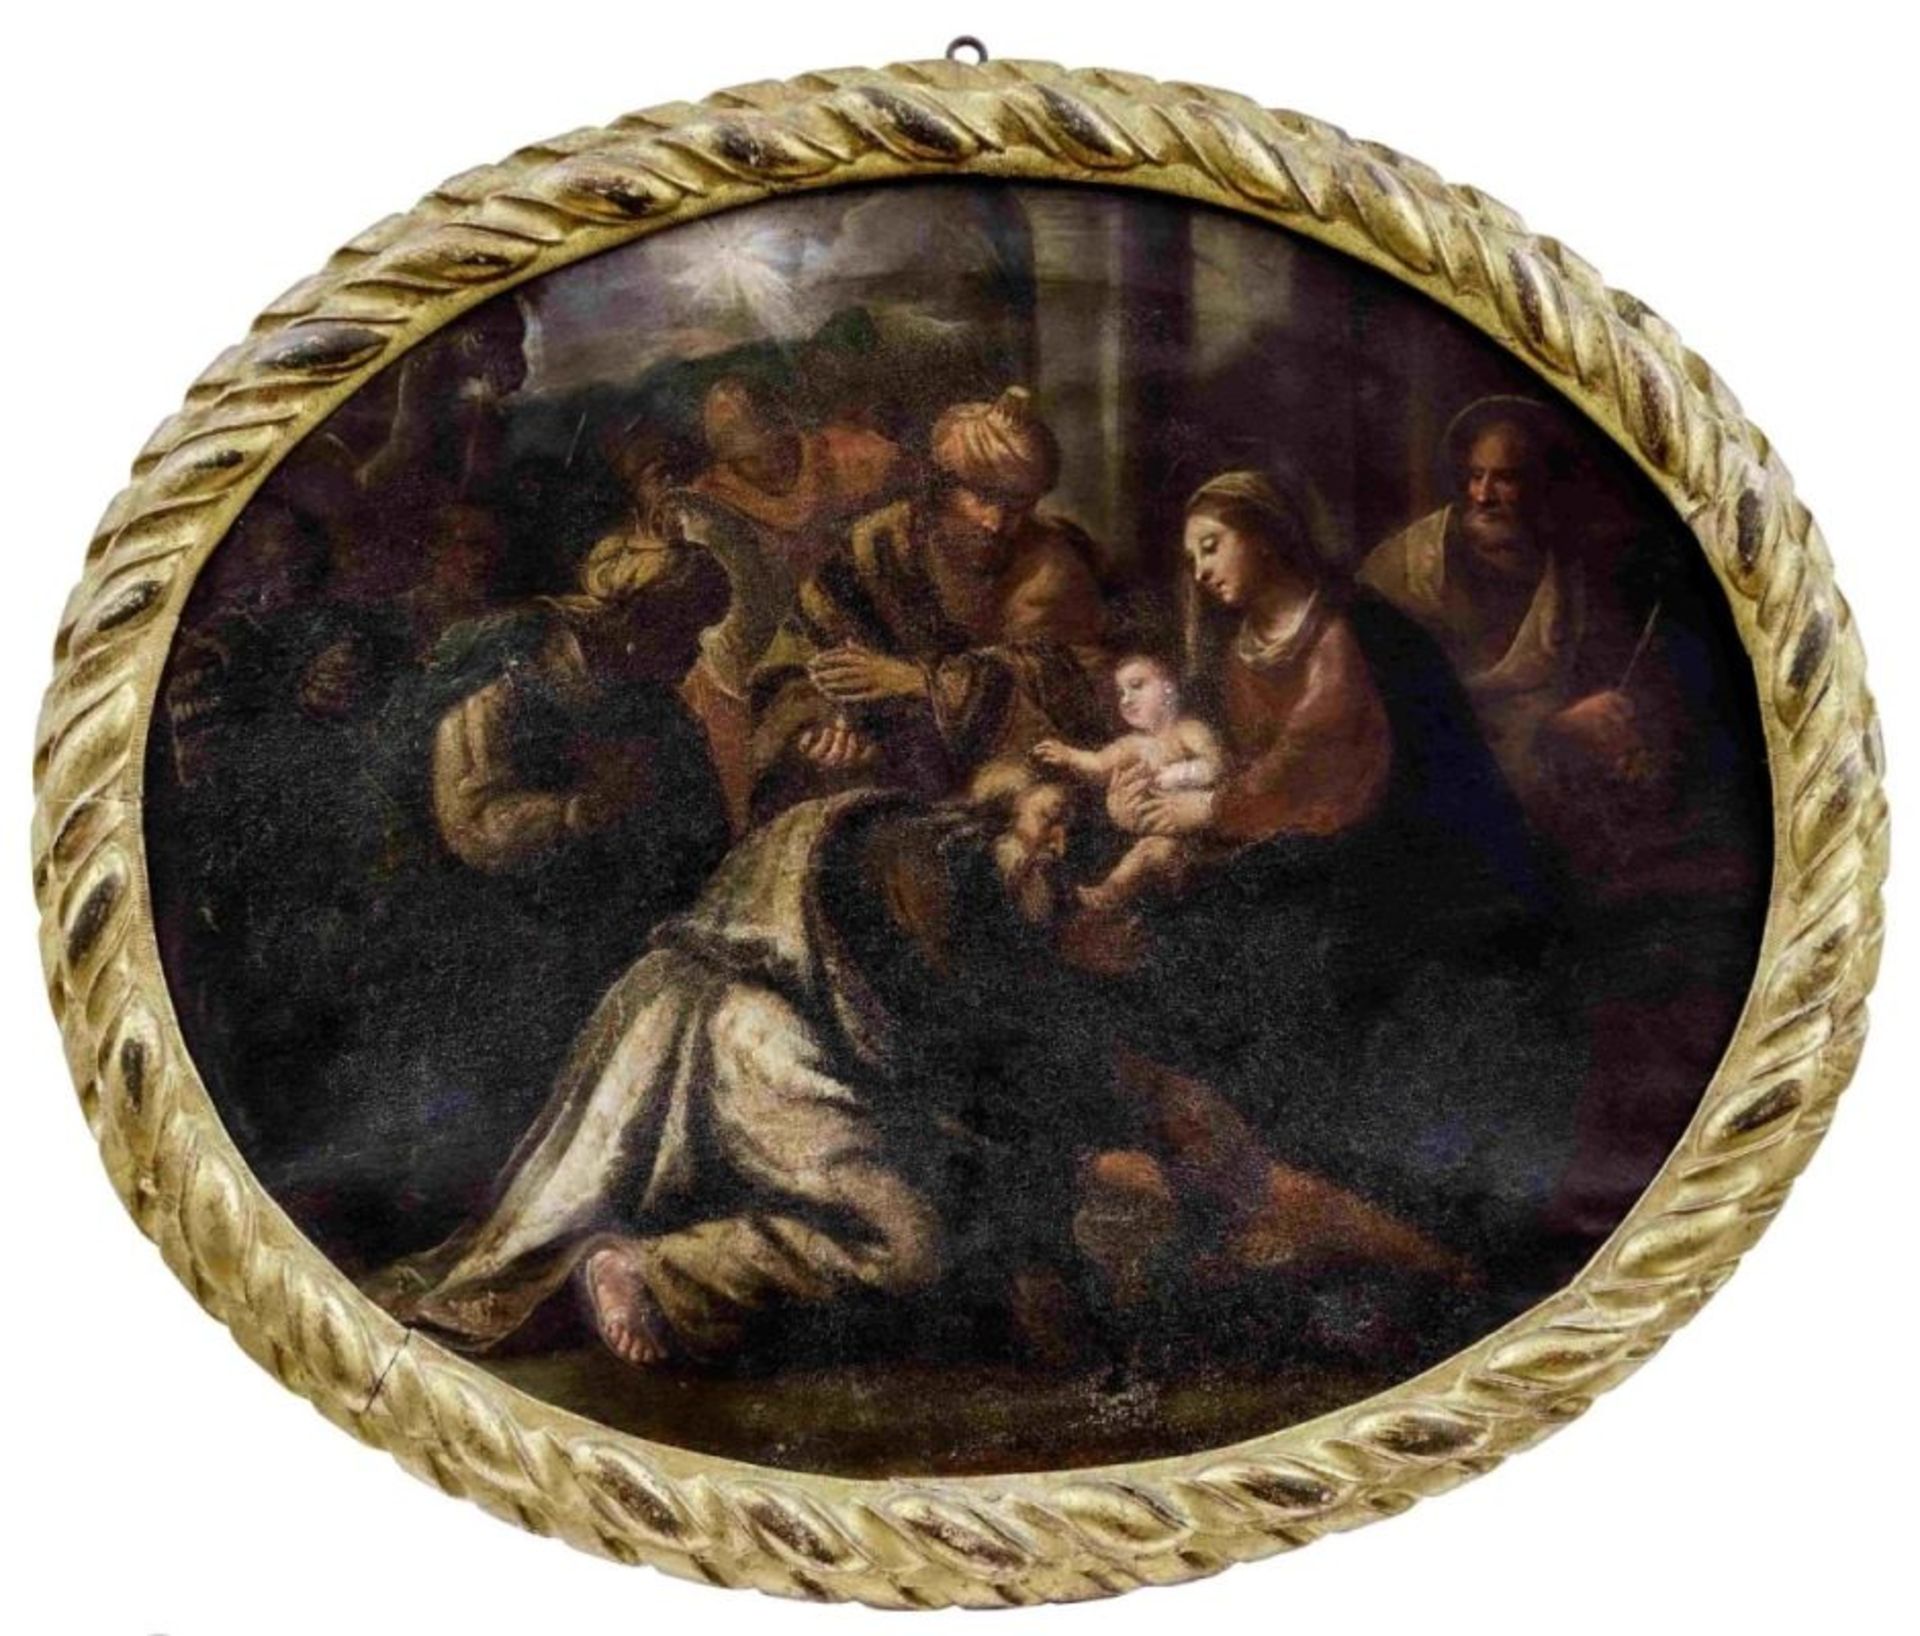 Anbetung des Jesuskindes durch die Heiligen Drei Könige, Bologneser Meister des 17. Jahrhunderts